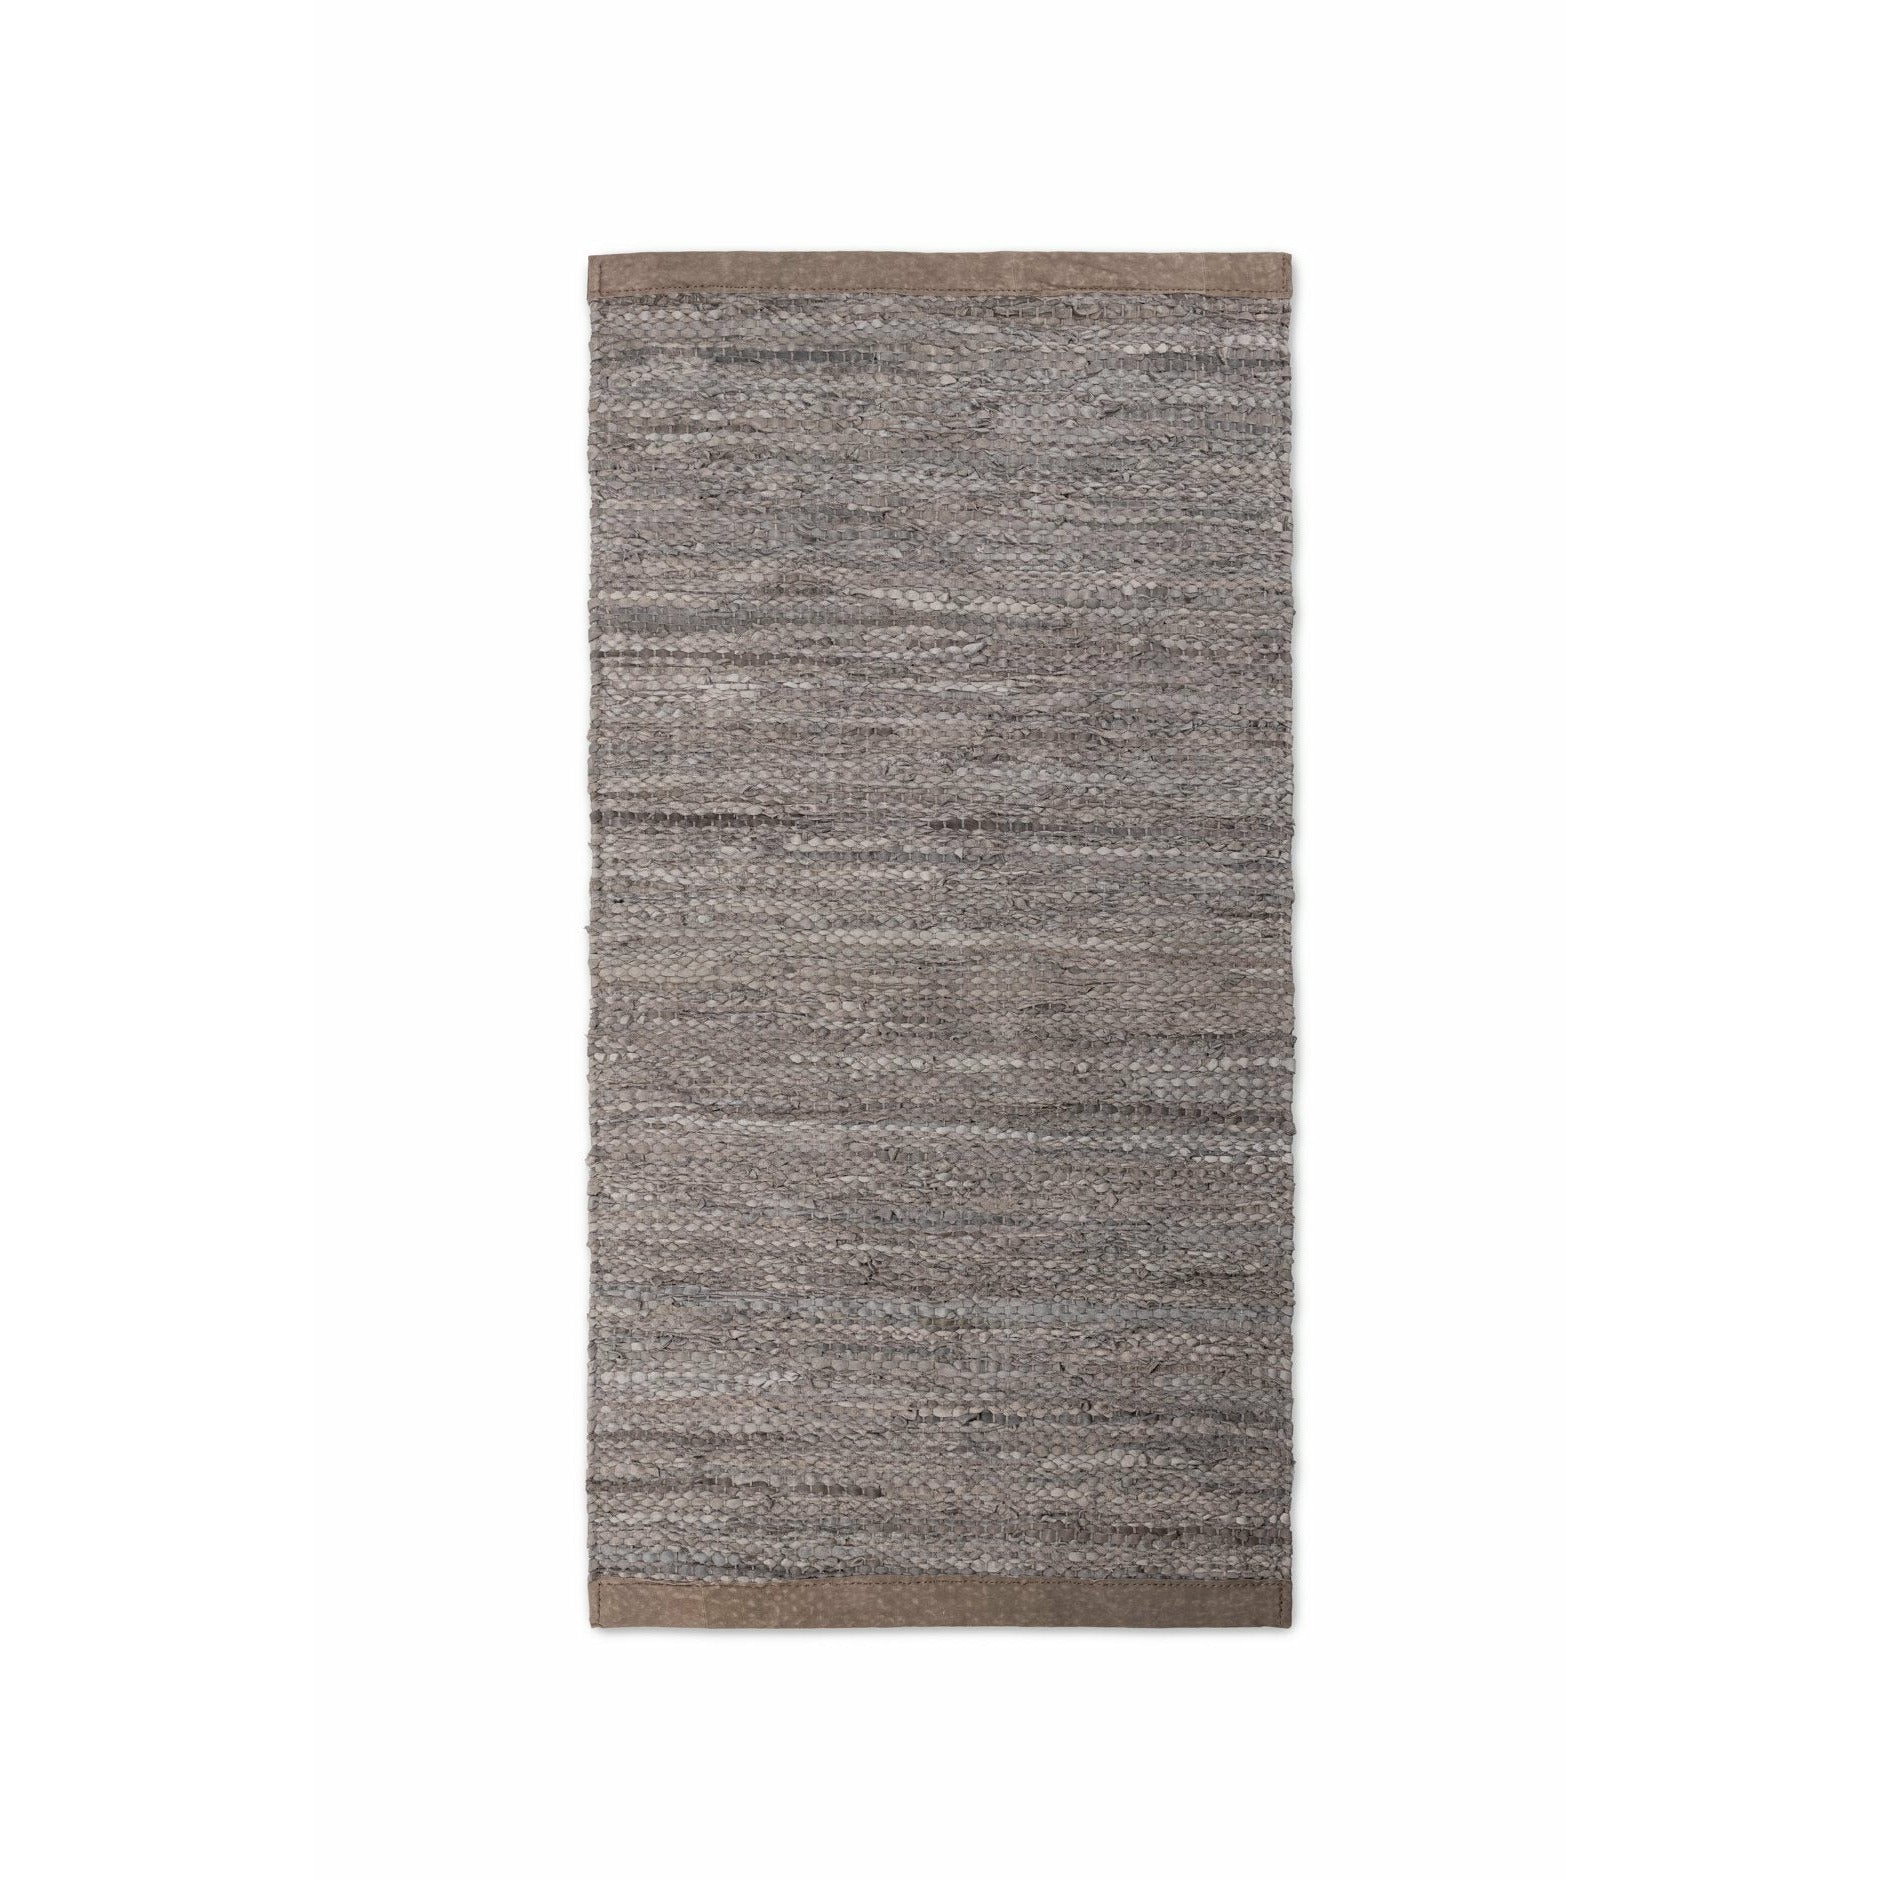 Rug Solid Leder Teppich Holz, 65 X 135 Cm